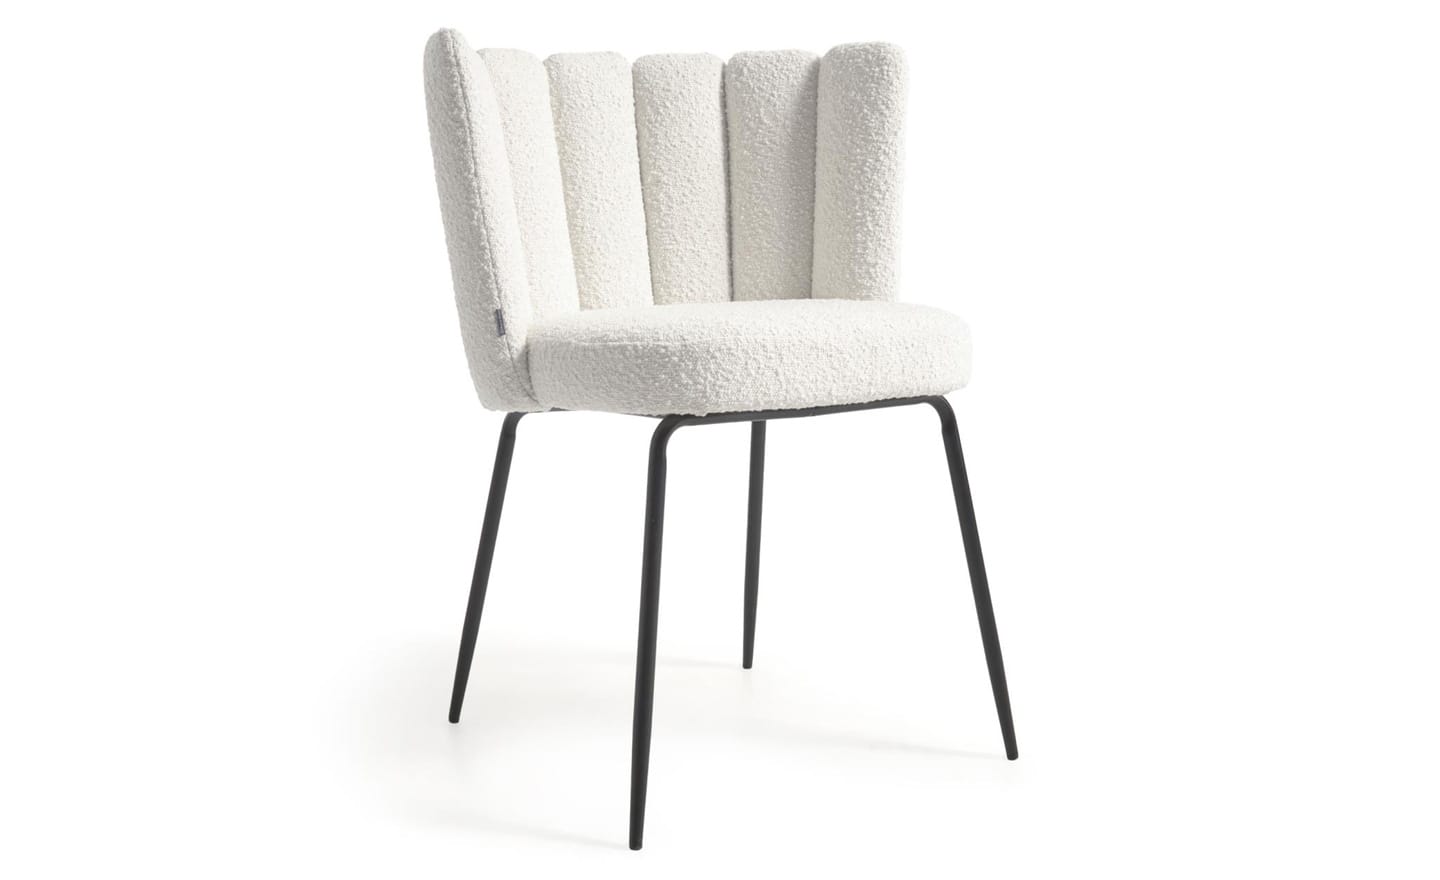 Cadeira Aniela Branco, estofada com tecido de efeito borrego na cor branca. Design envolvente para espaços de refeição elegantes.